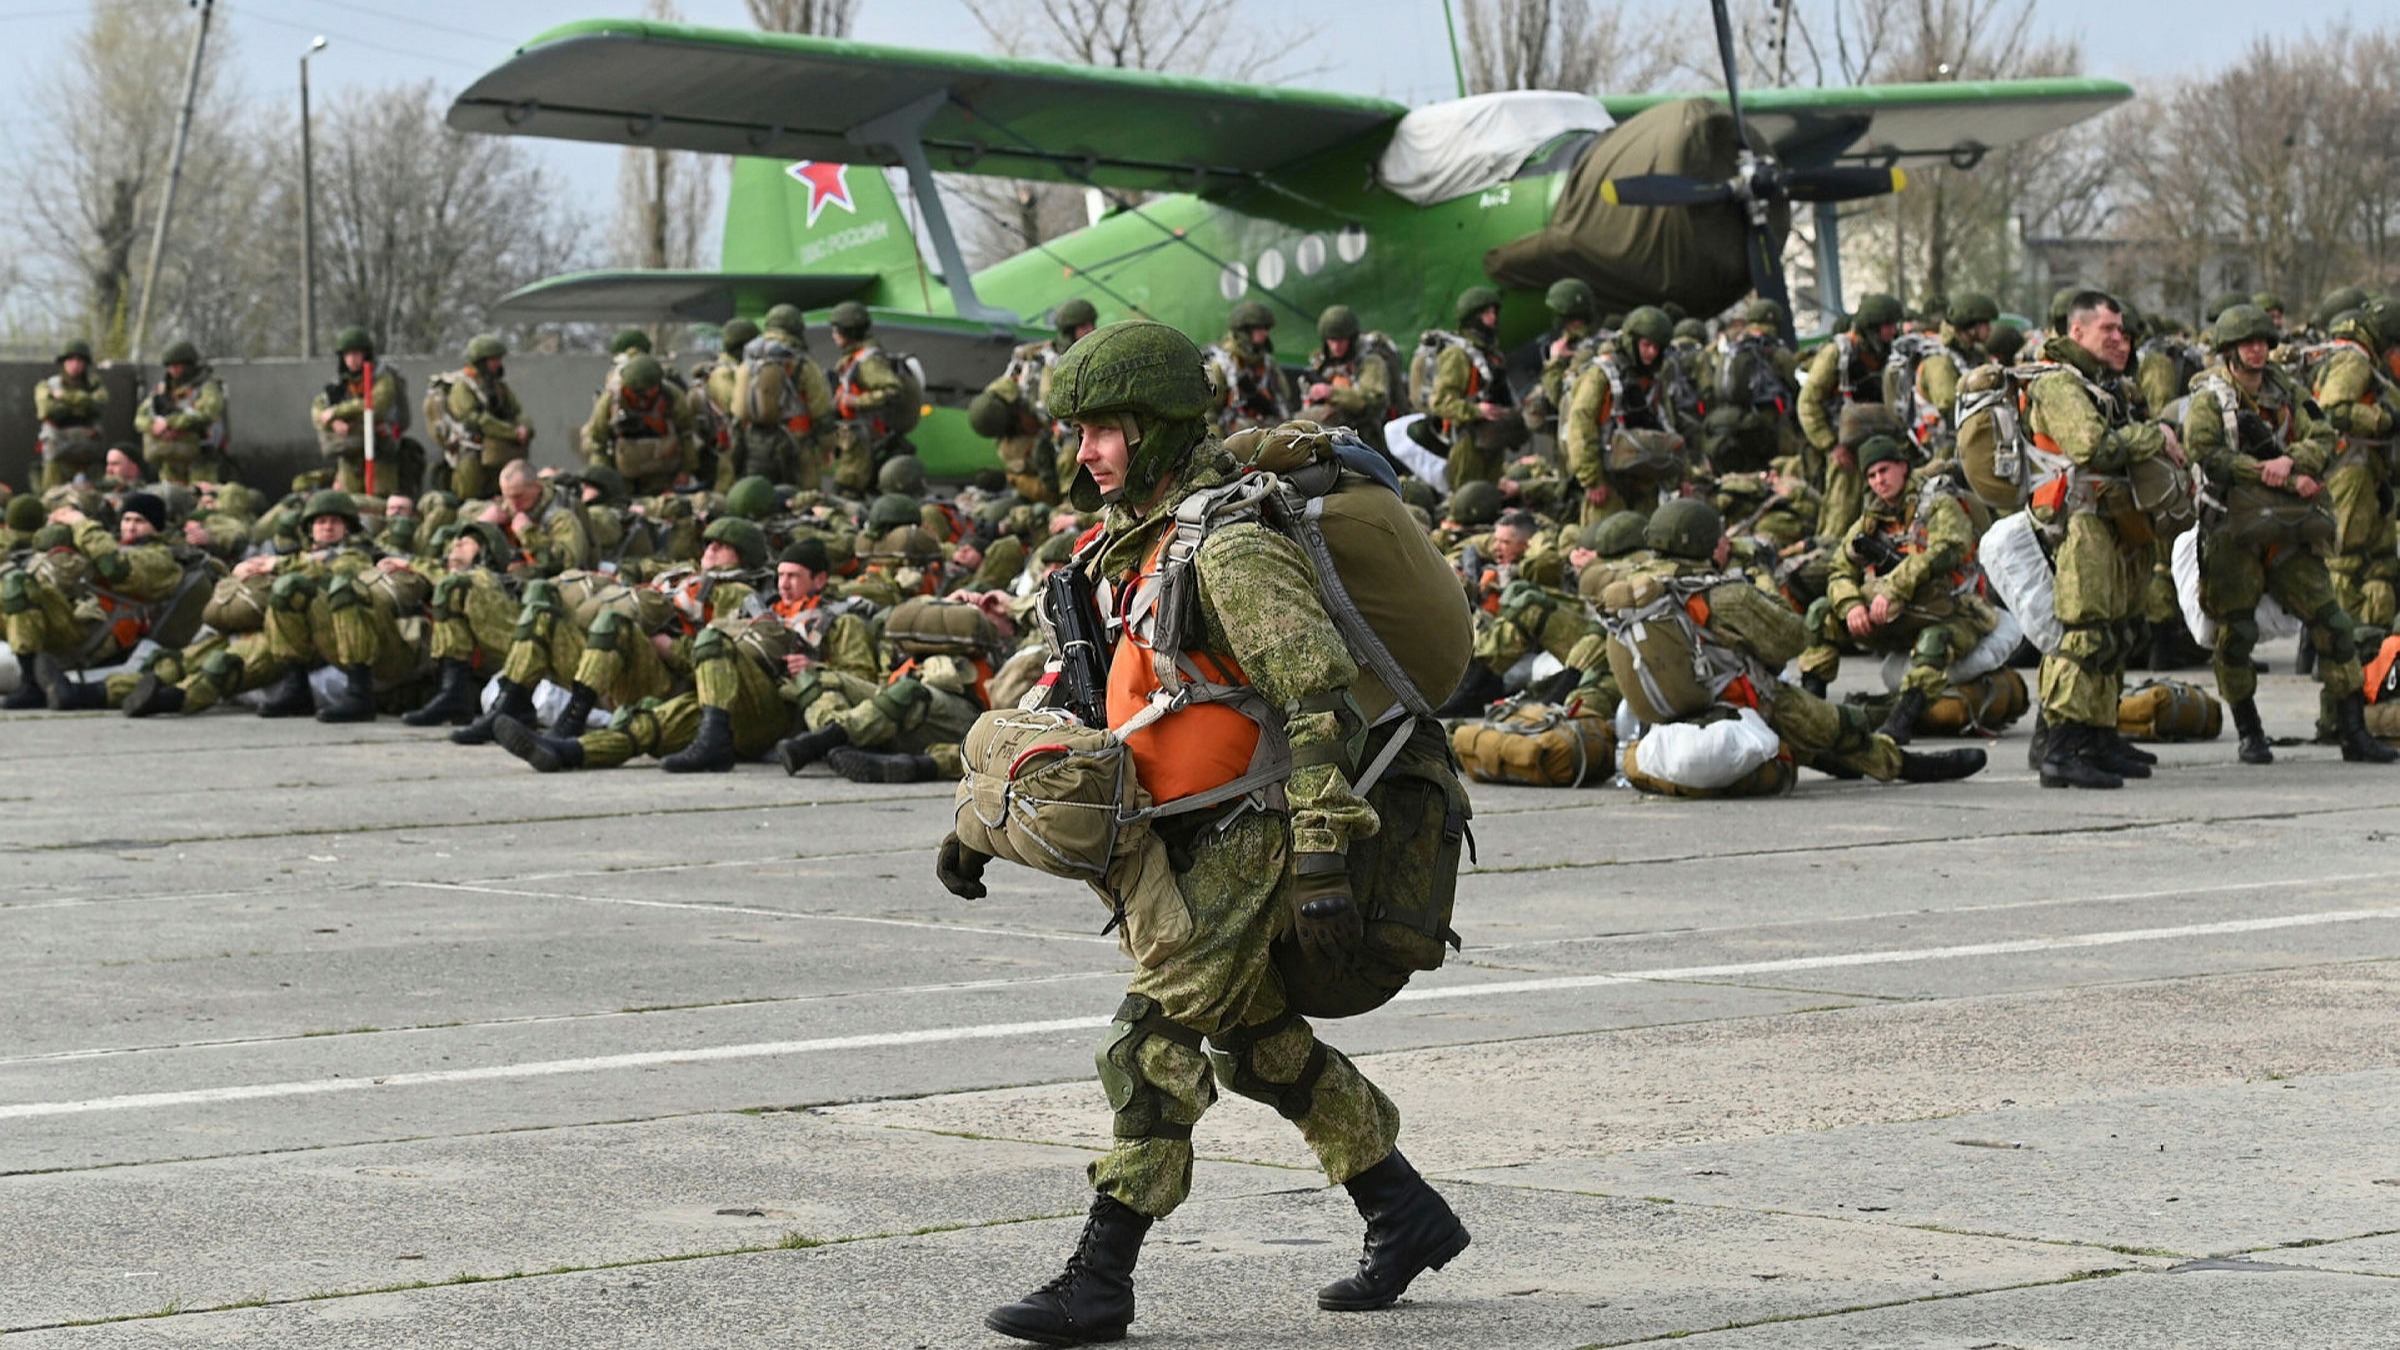 Krisja e luftës afër, por shihni dallimin në fuqinë ushtarake Rusi-Ukrainë